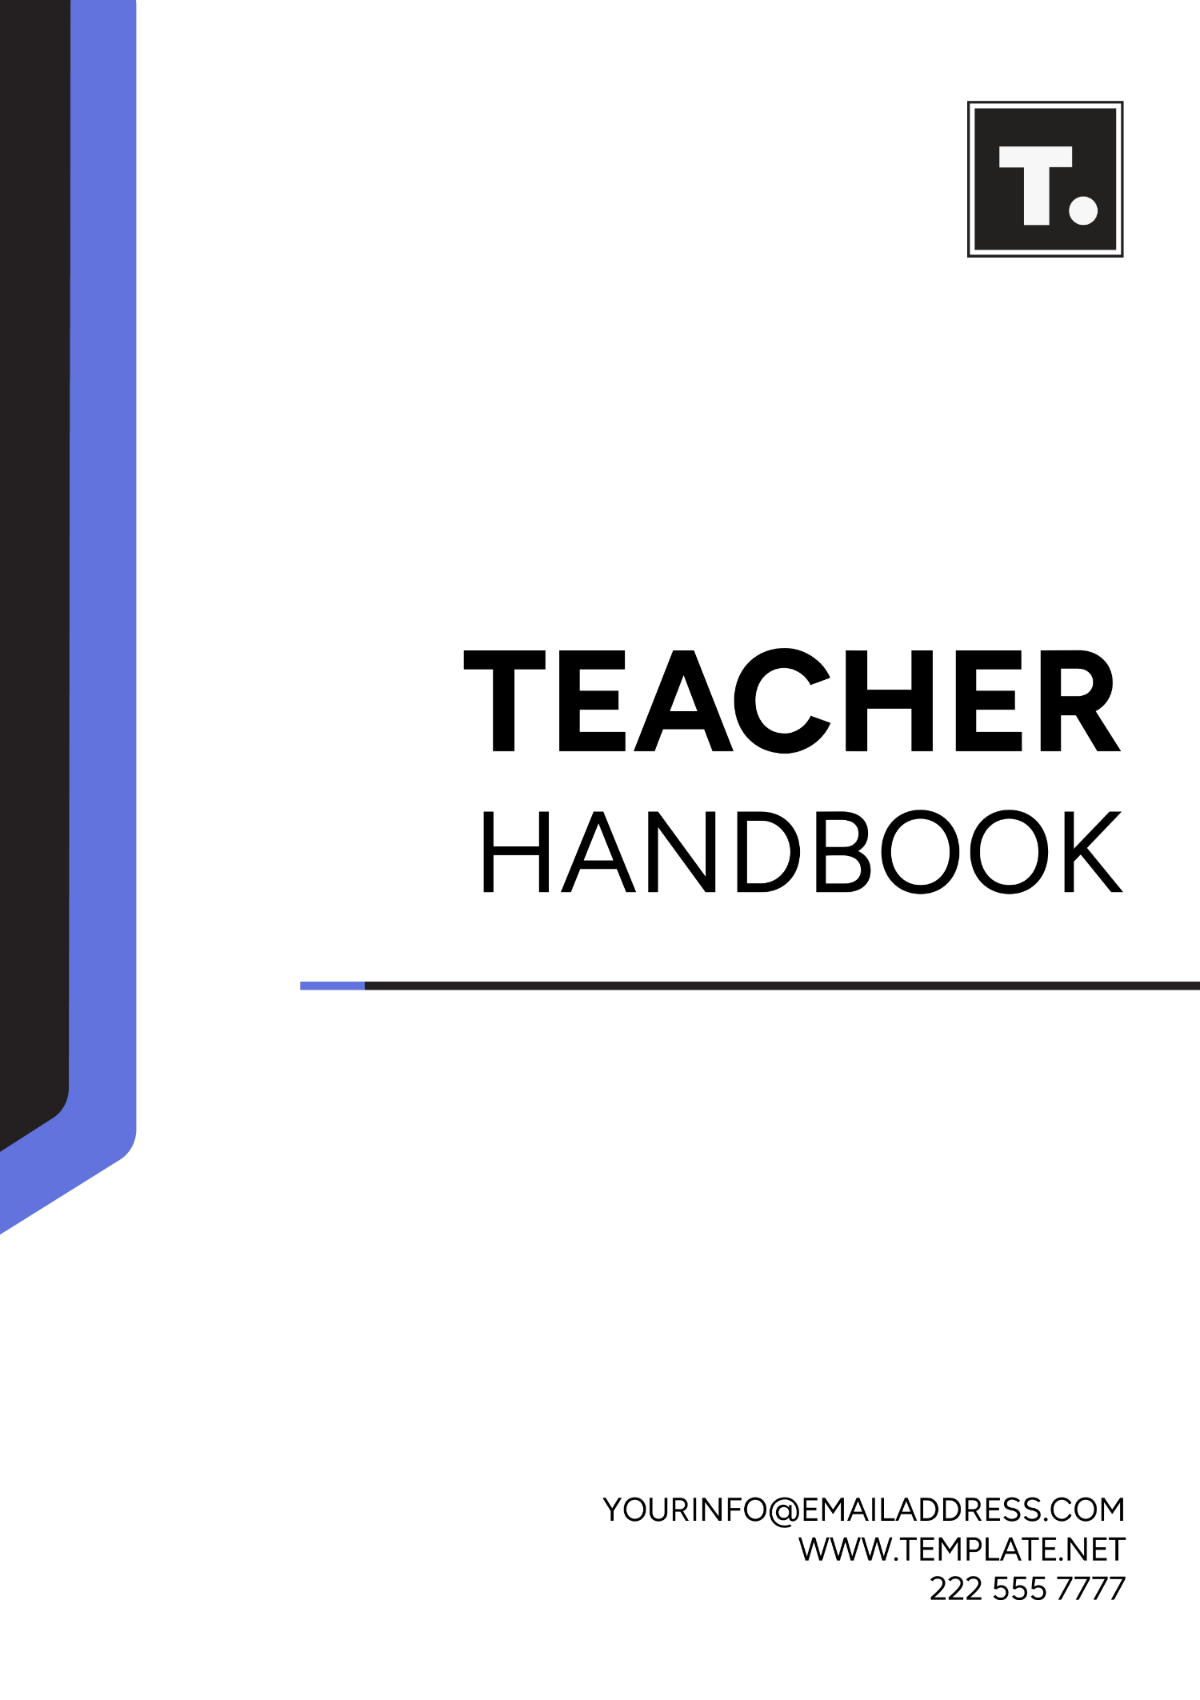 Free Teacher Handbook Template